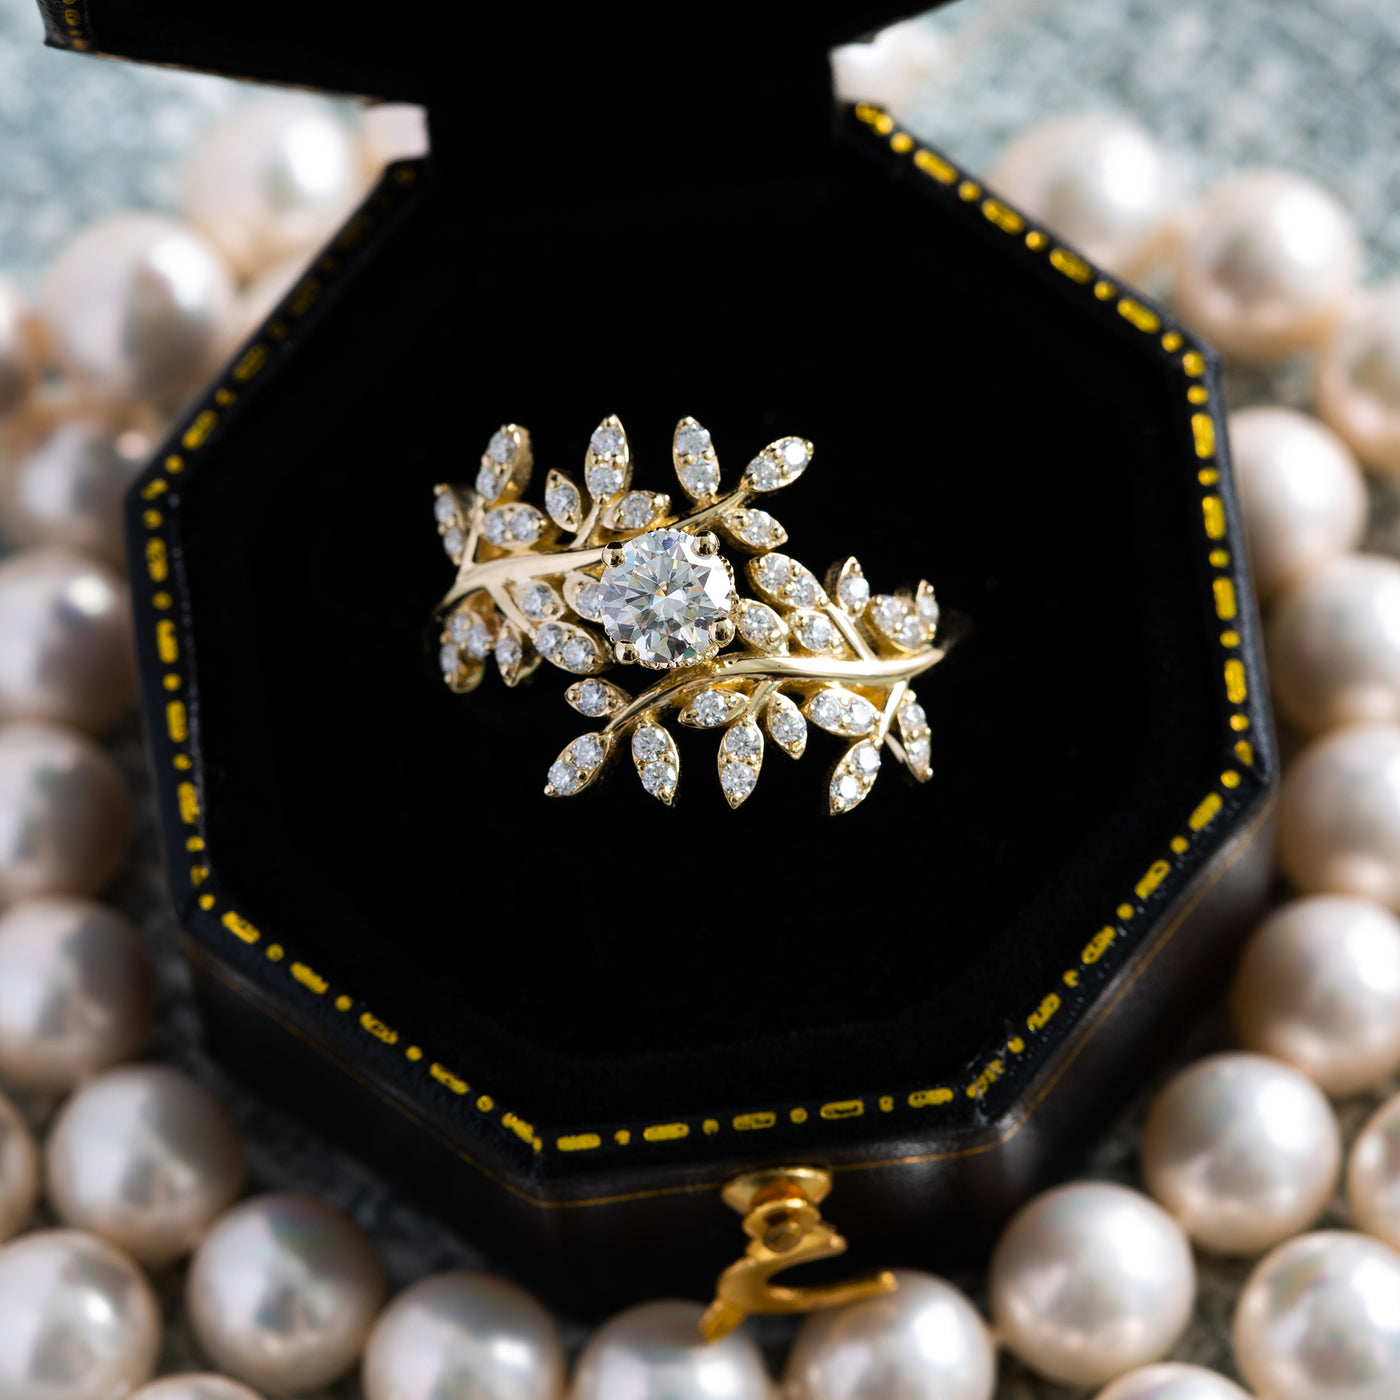 Hera | Diamond Engagement Ring